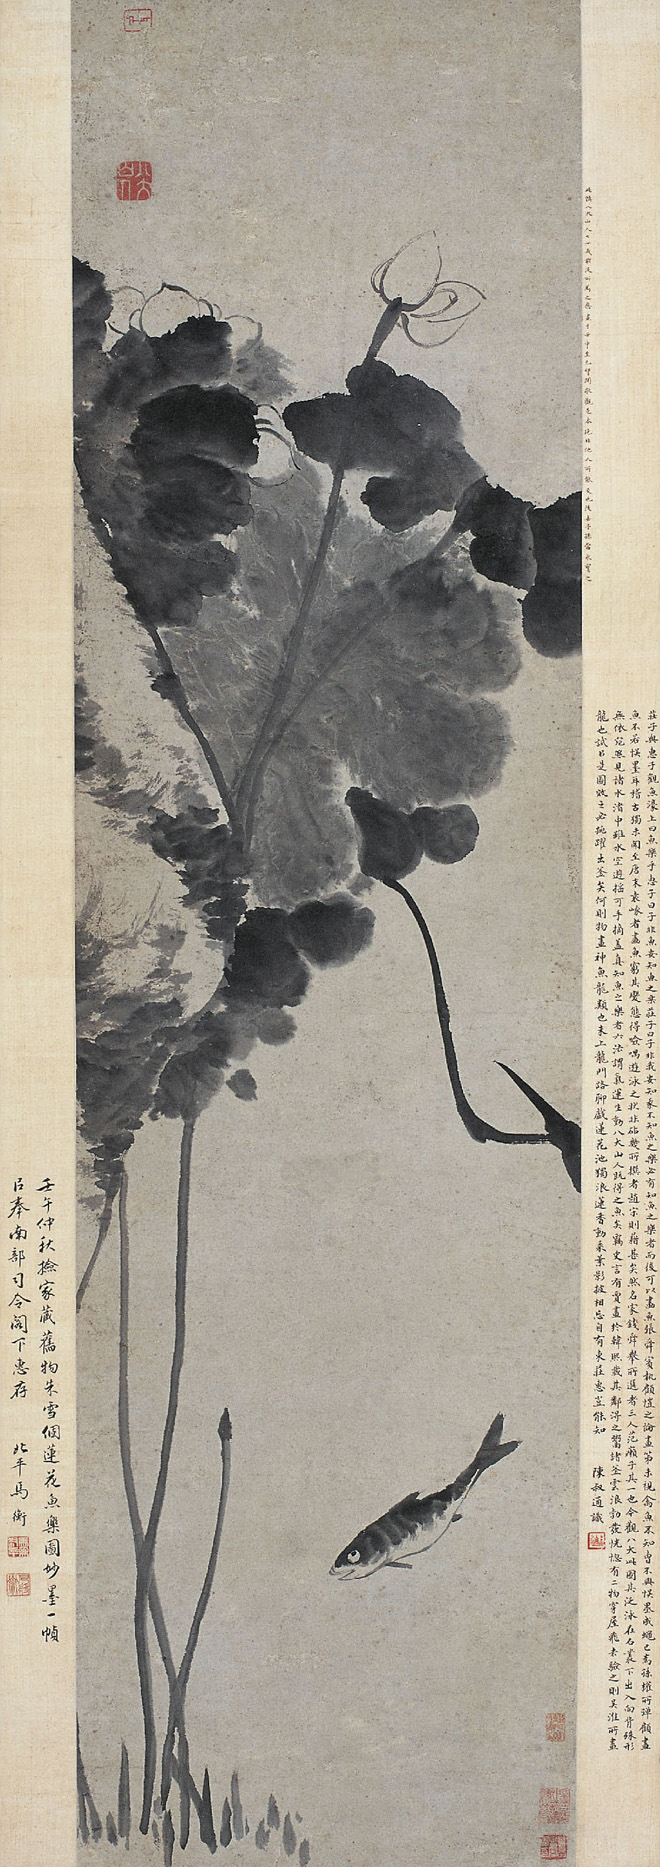 Zhu Da: A Joyful Fish under the Lotus